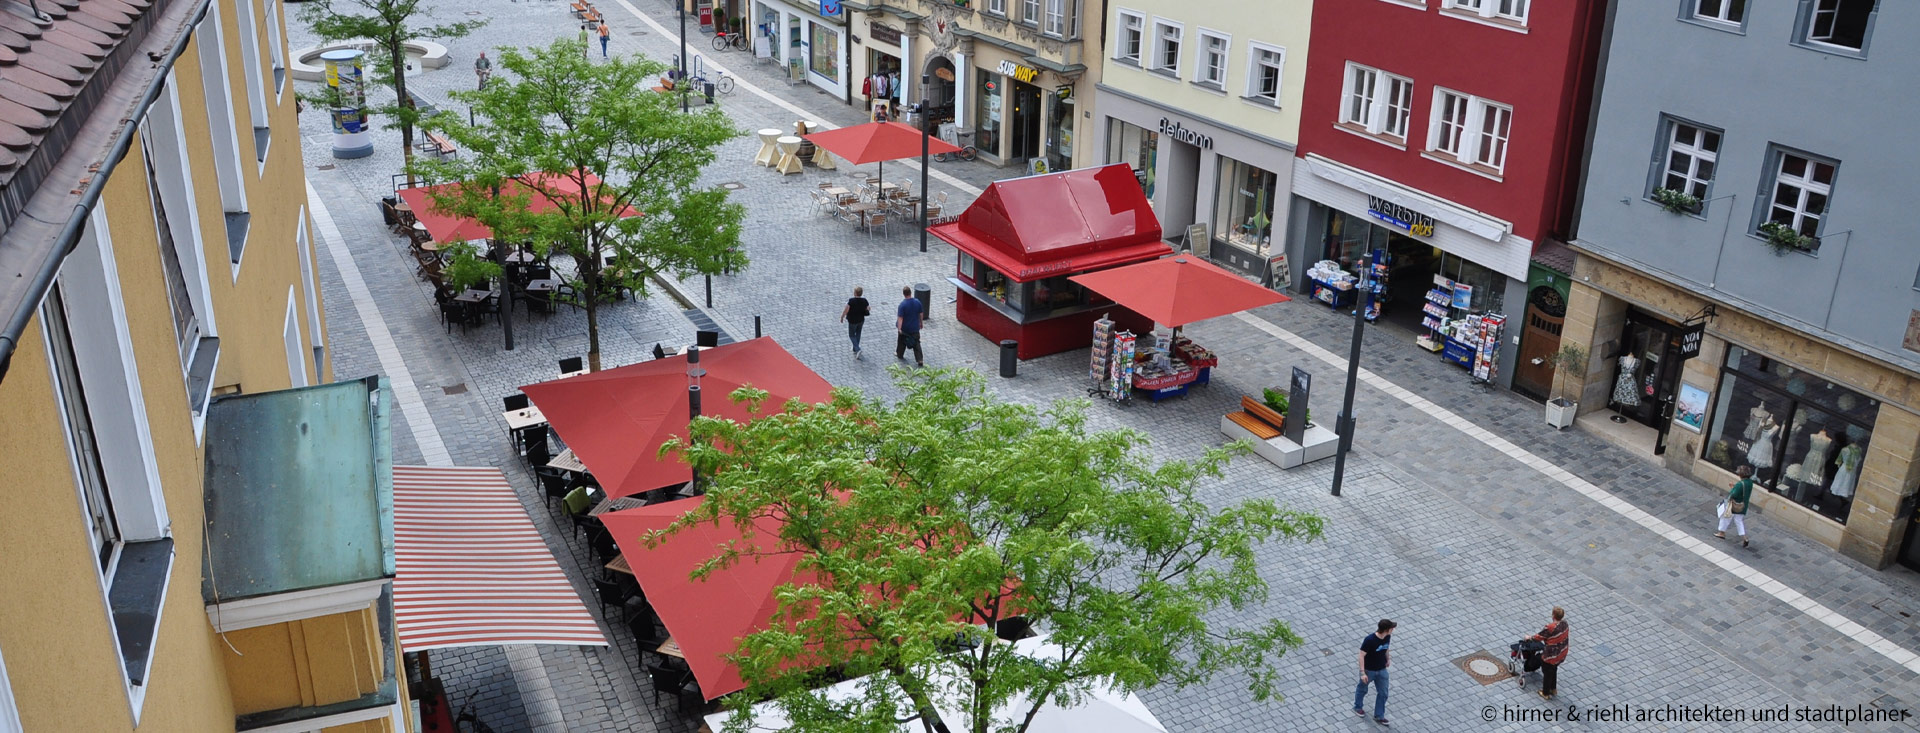 Foto des Markplatzes mit den Marktschirmen © hirner & riehl architekten und stadtplaner